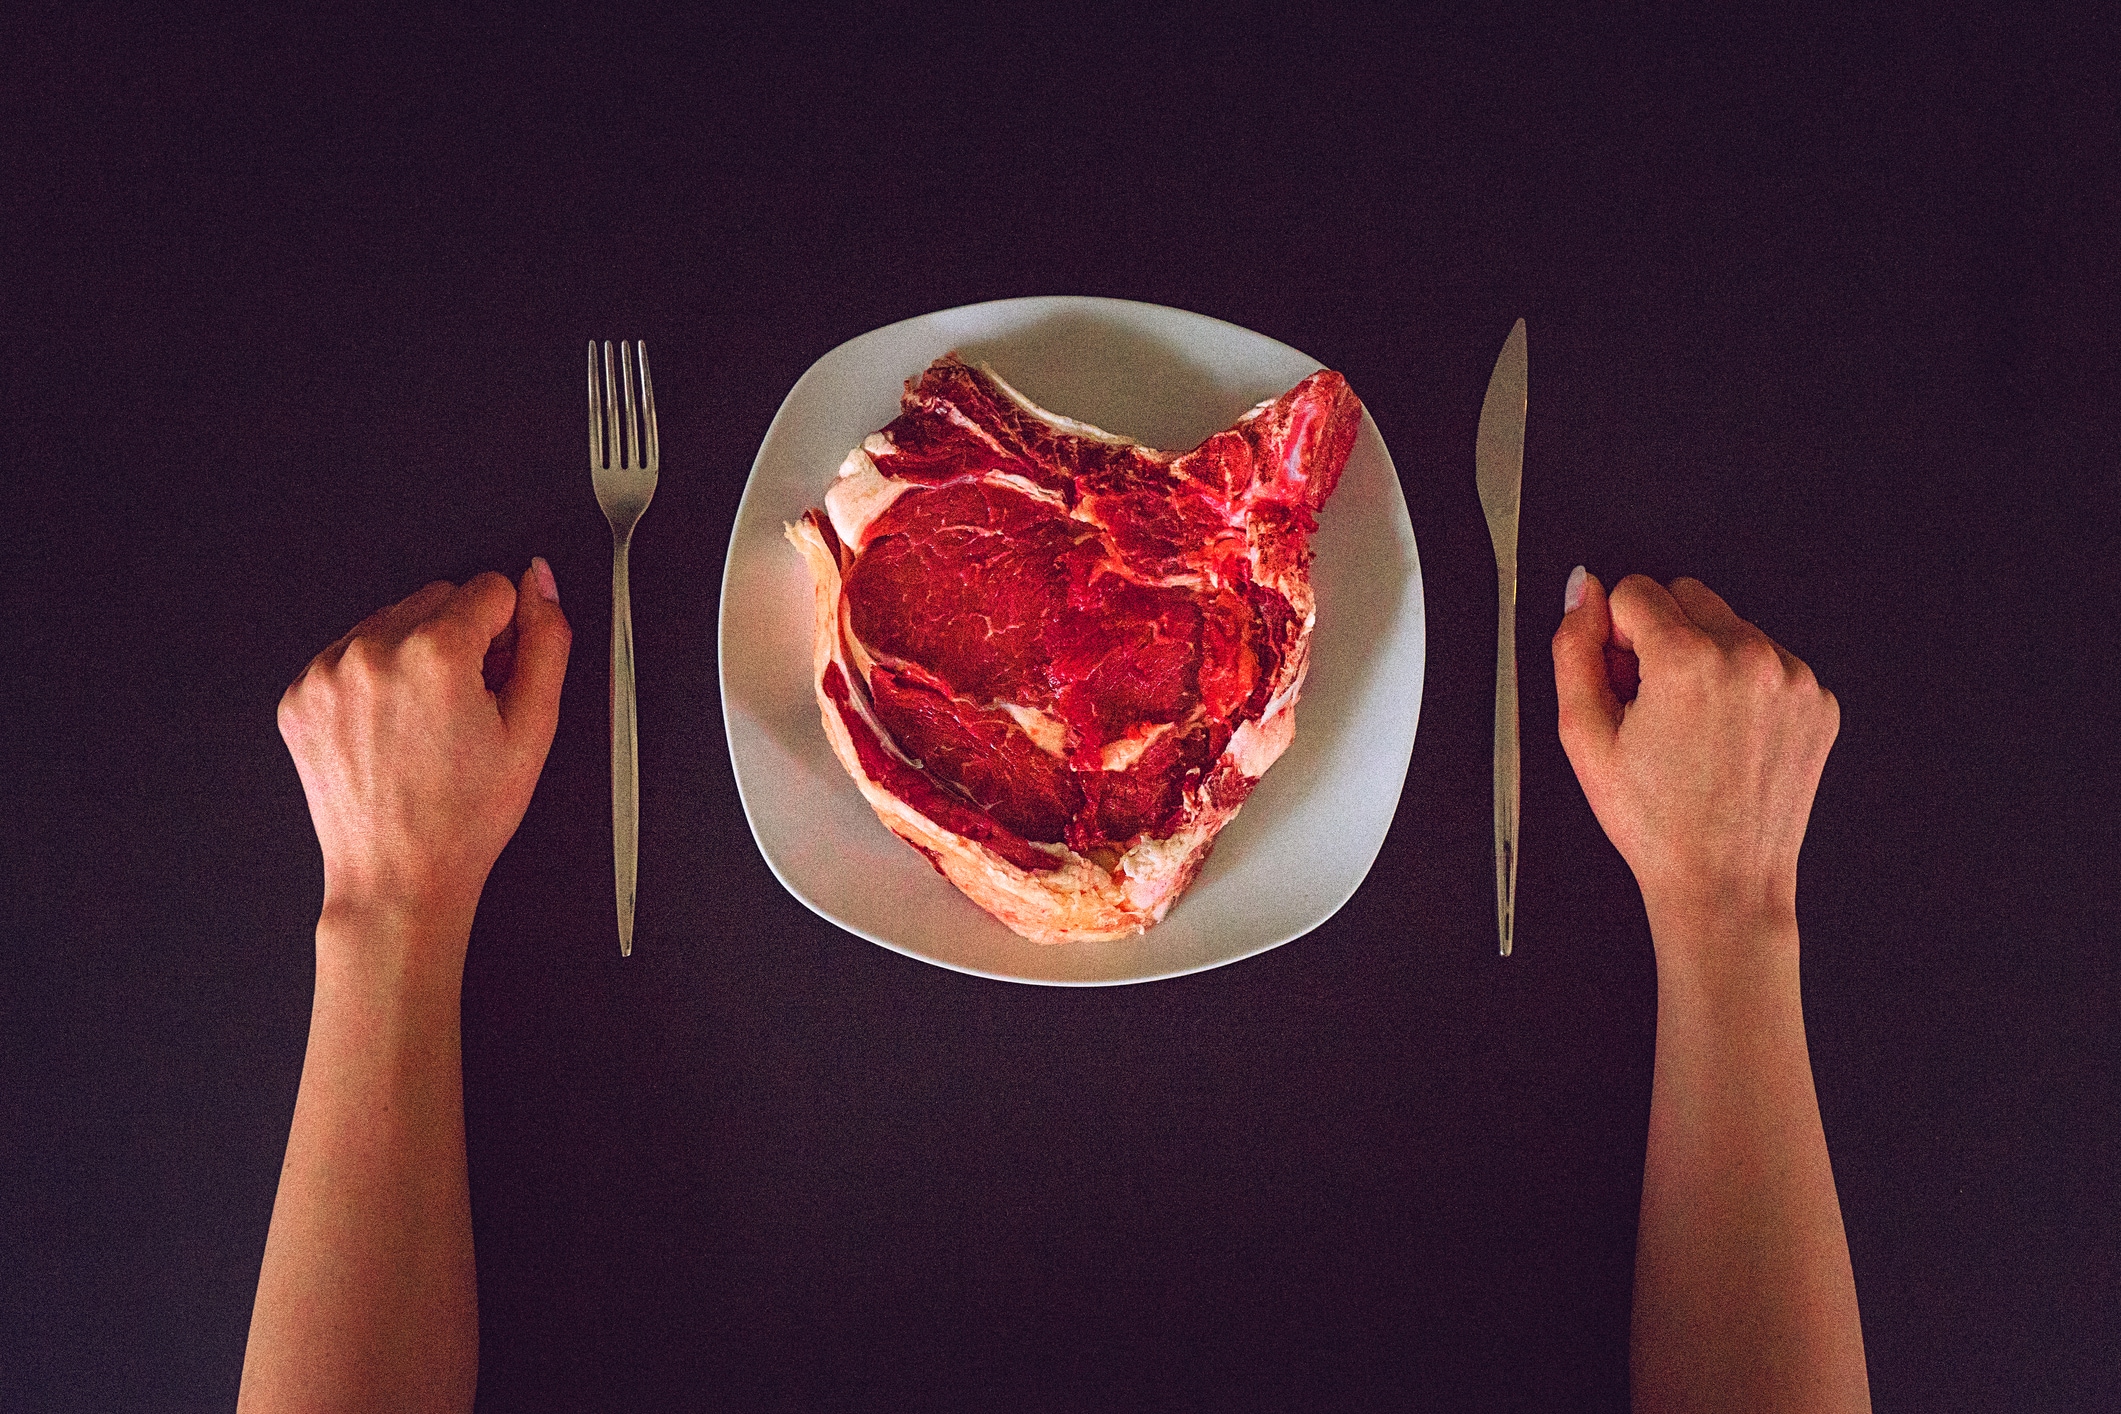 Het ‘leeuwendieet’ bestaat uit vlees, vlees en nog eens vlees: ‘We zijn echt niet goed bezig met onze voeding’